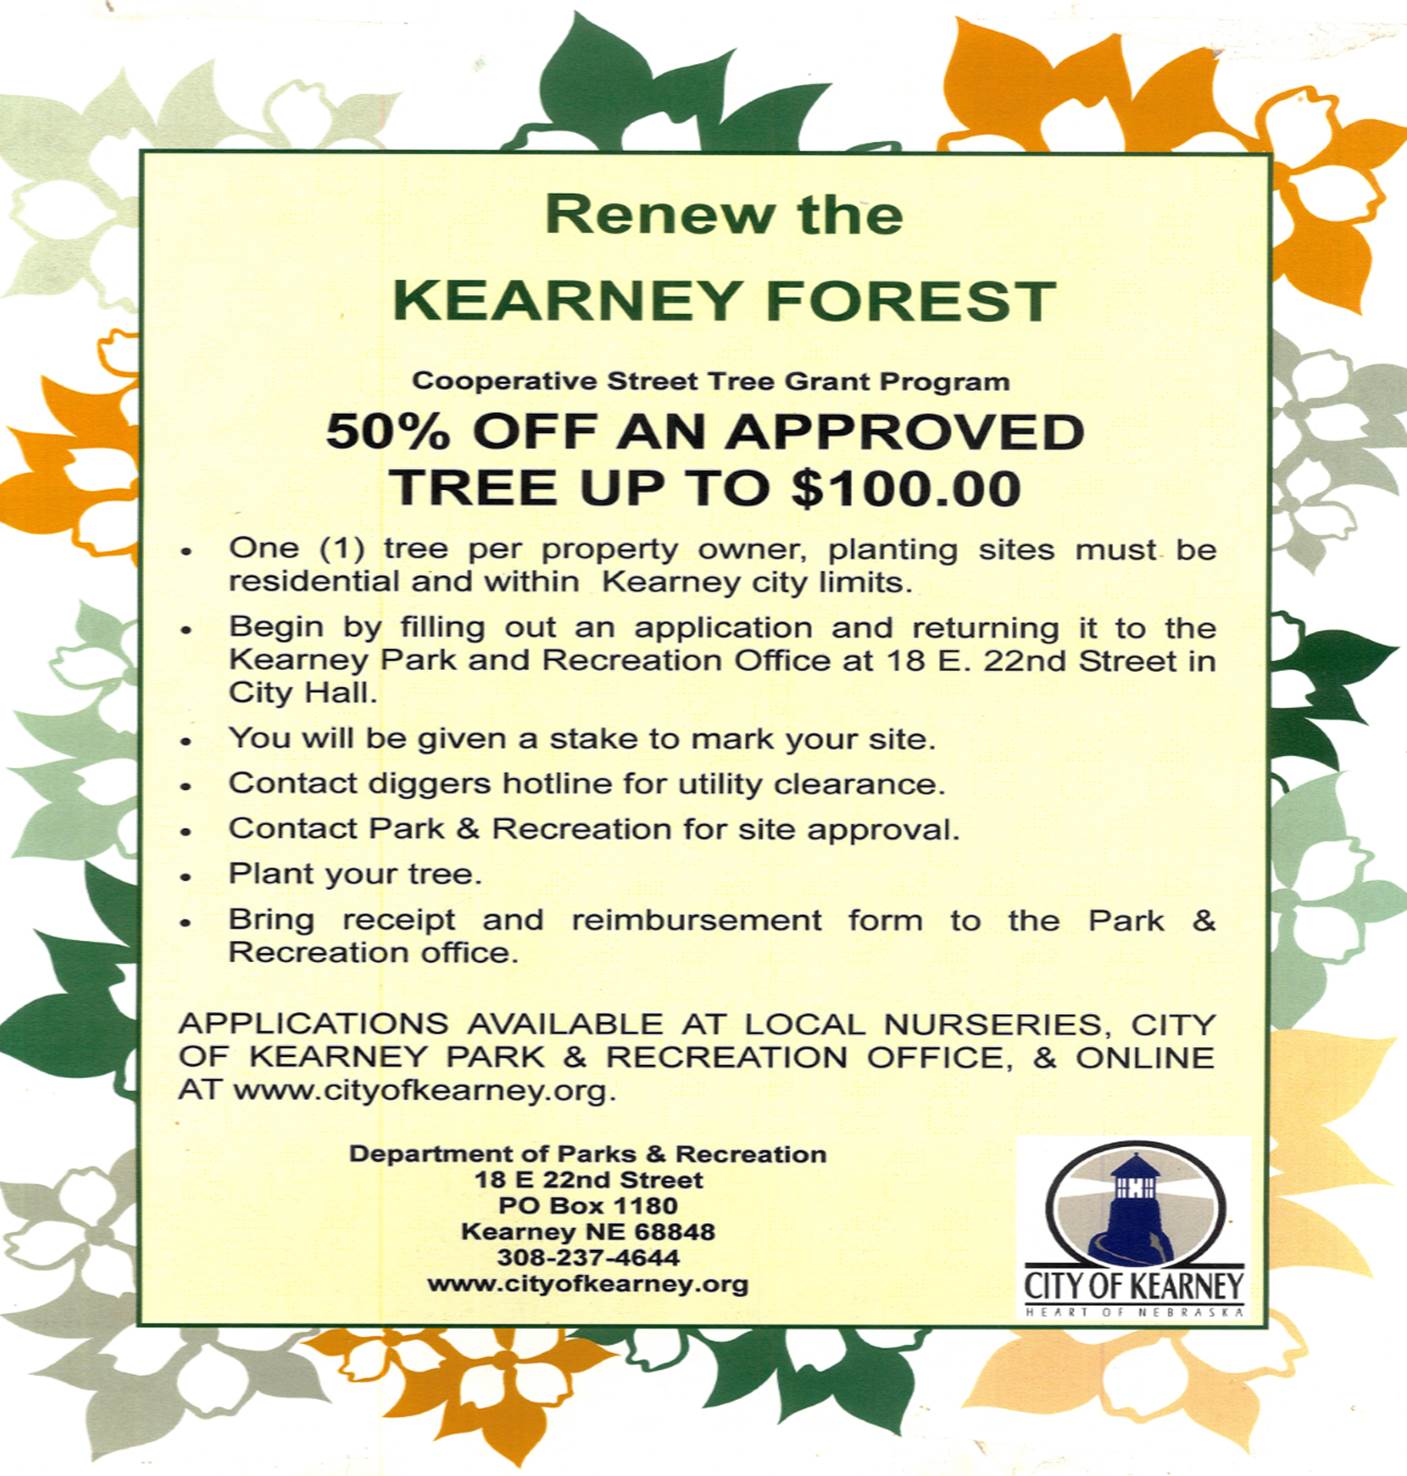 Re-Tree Kearney